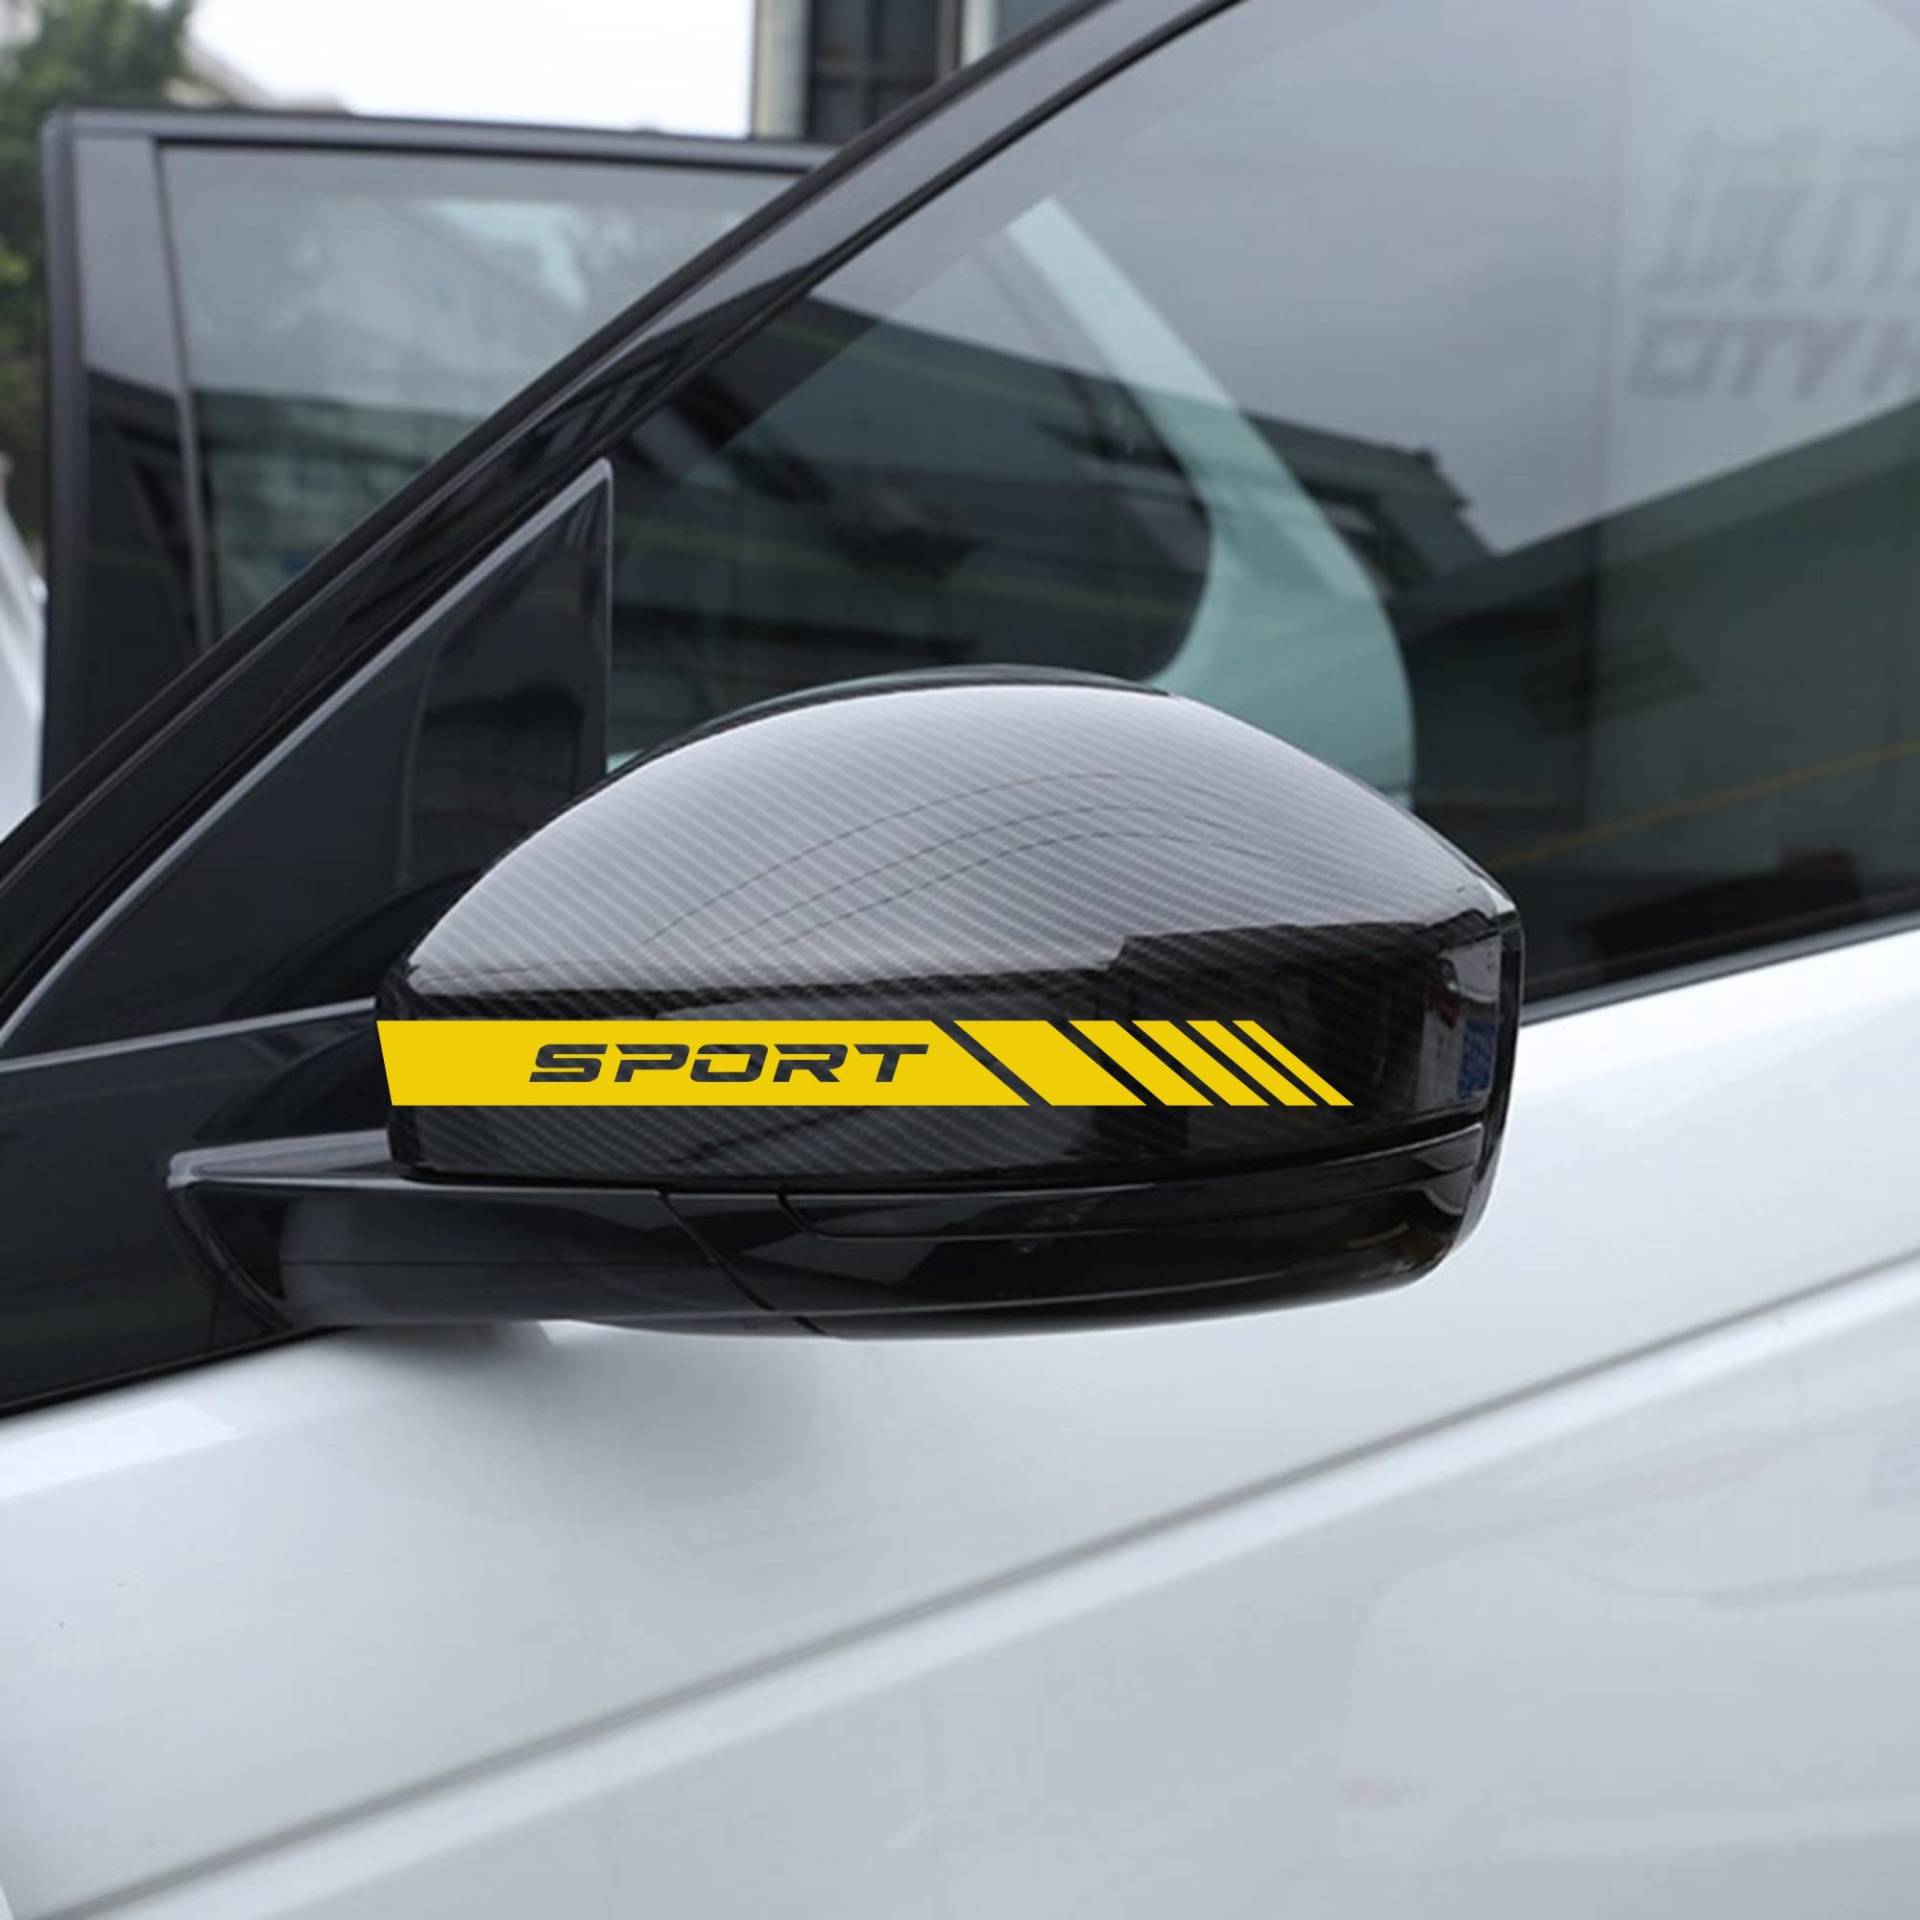 AUTODOMY Rückspiegel Aufkleber Stickers Auto mit Streifen Design Stripes Tuning Packet mit 6 Einheiten mit unterschiedlichen Breiten Sportdesign für das Auto (Gelb) von AUTODOMY